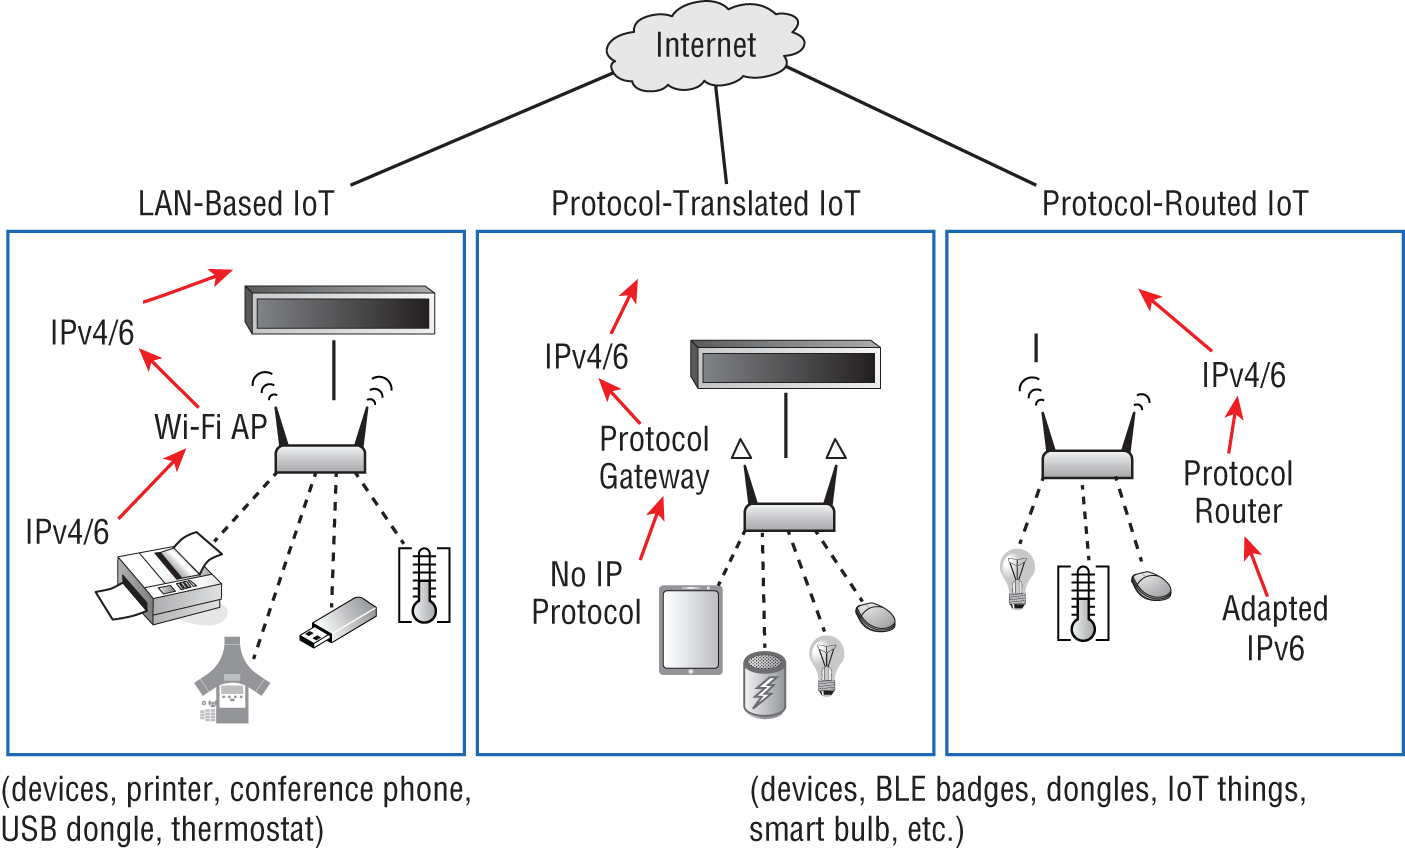 Snapshot shows LAN-based IoT vs. protocol-translated IoT vs. protocol-routed IoT